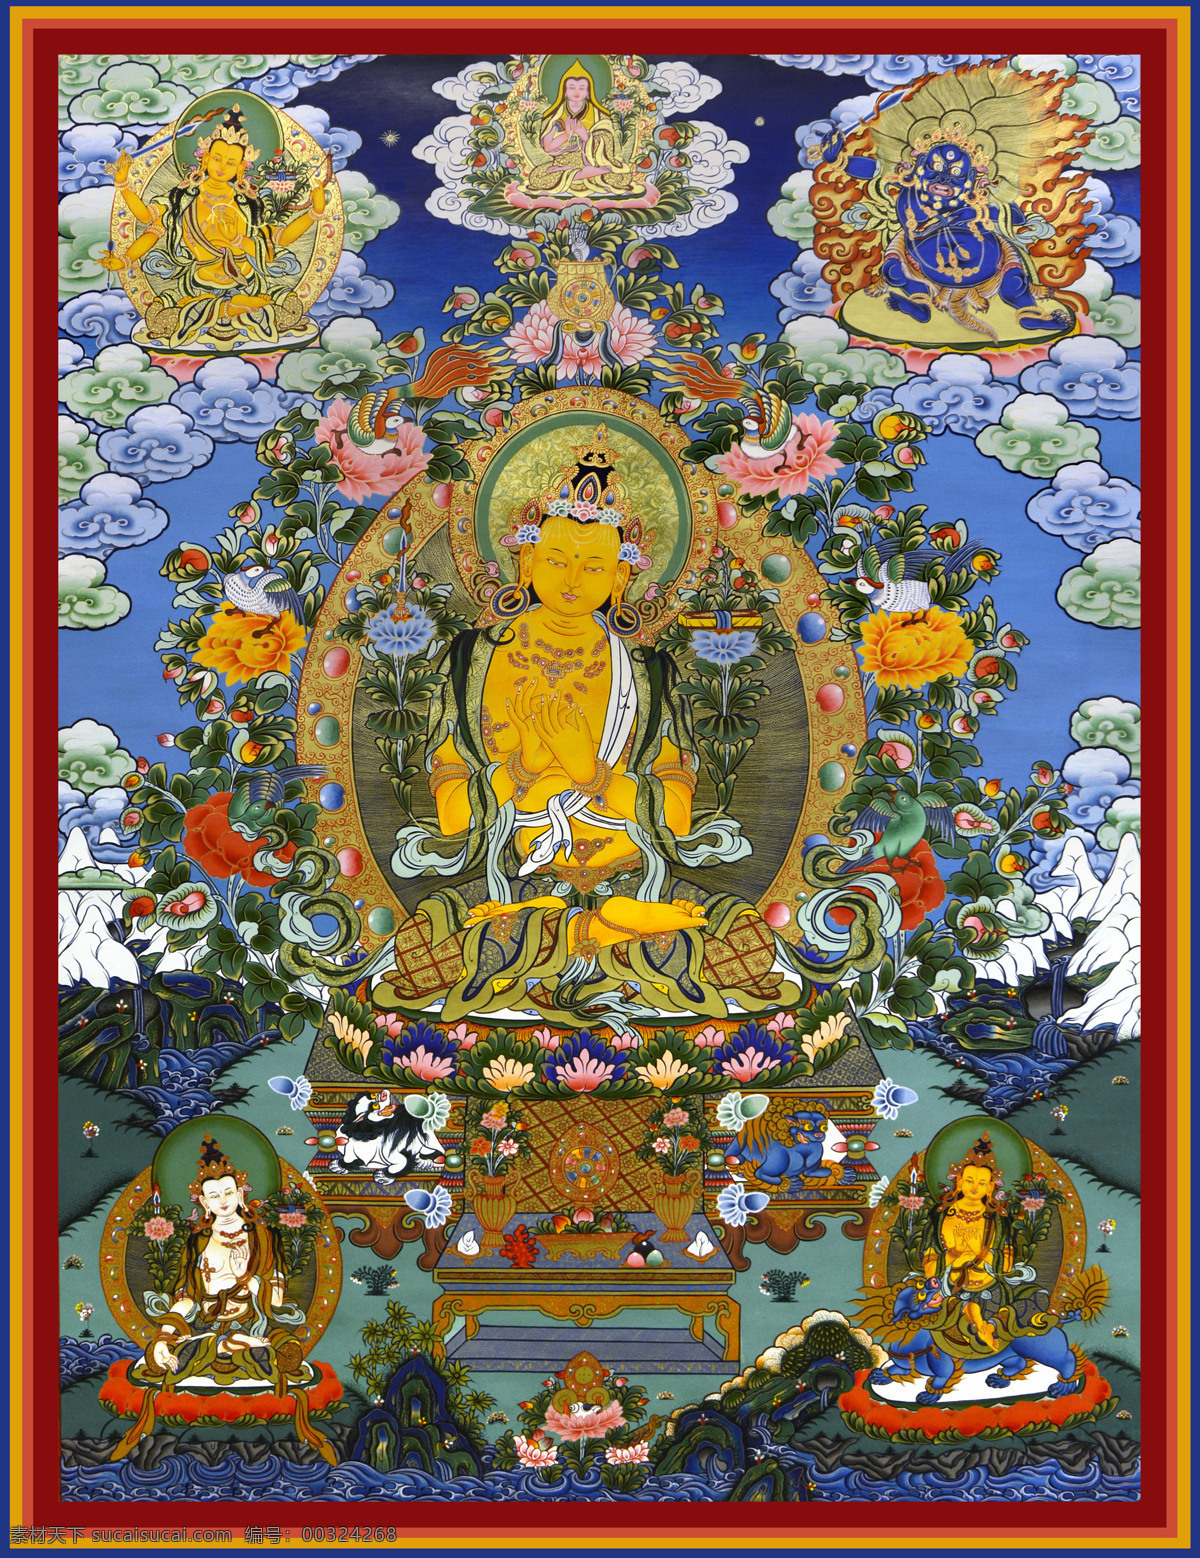 唐卡 文殊菩萨 菩萨像 藏族绘画 藏族 藏族文化 喇嘛教 西藏 藏传佛教 密宗 佛像 佛教 佛教故事 宗教信仰 民间绘画 民间艺术 传统文化 文化艺术 绘画书法